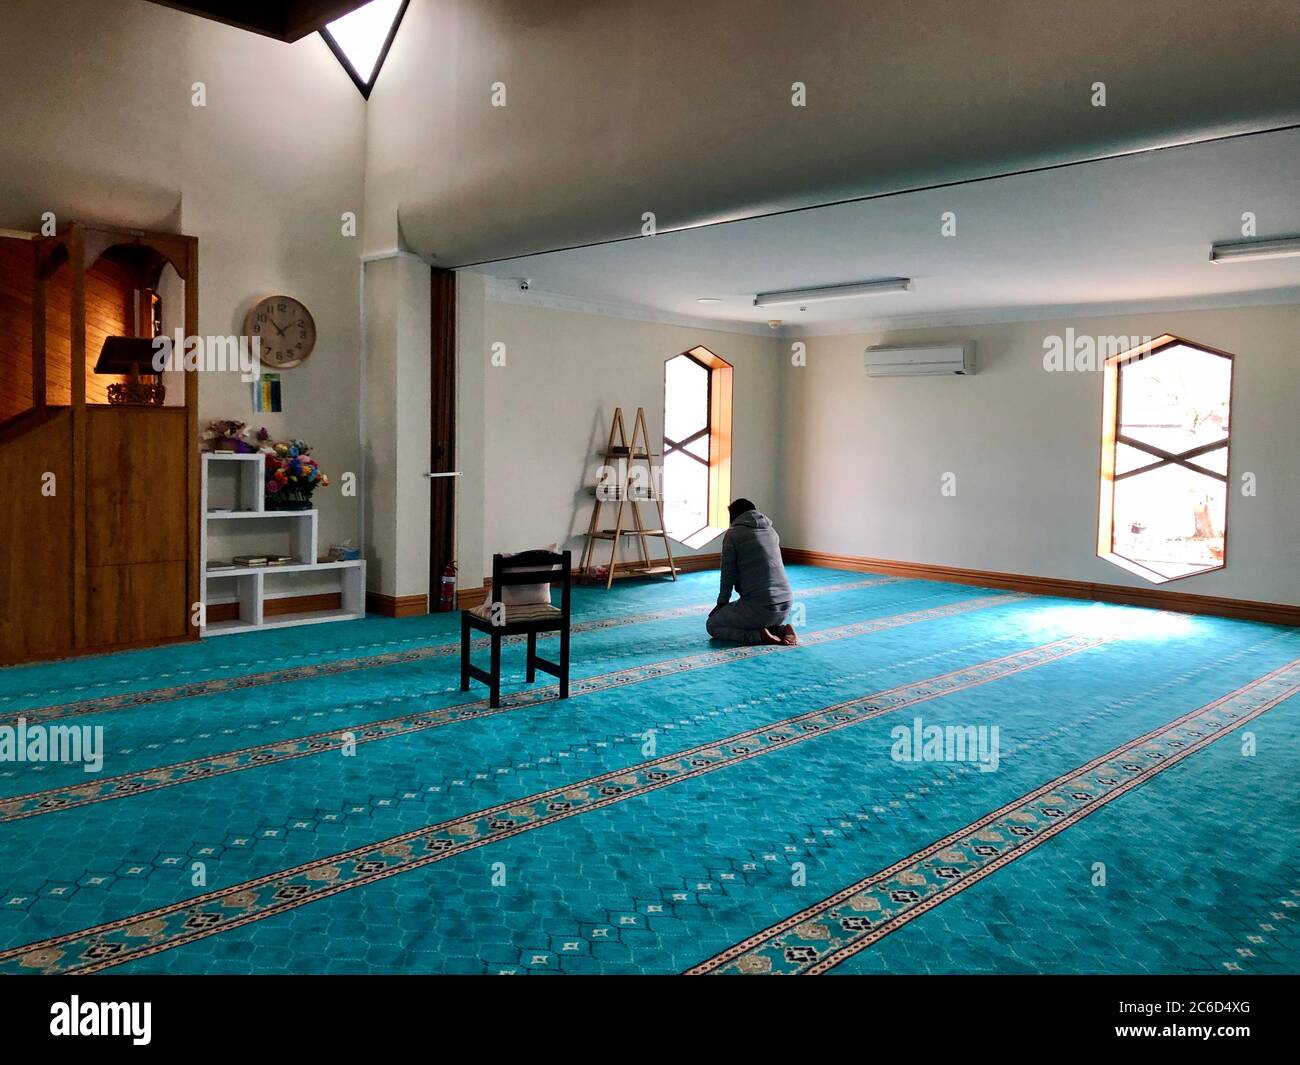 La mosquée de Christchurch est l'endroit où ils ont été deux attaques terroristes consécutives de tir dans les mosquées à Christchurch, Nouvelle-Zélande Banque D'Images